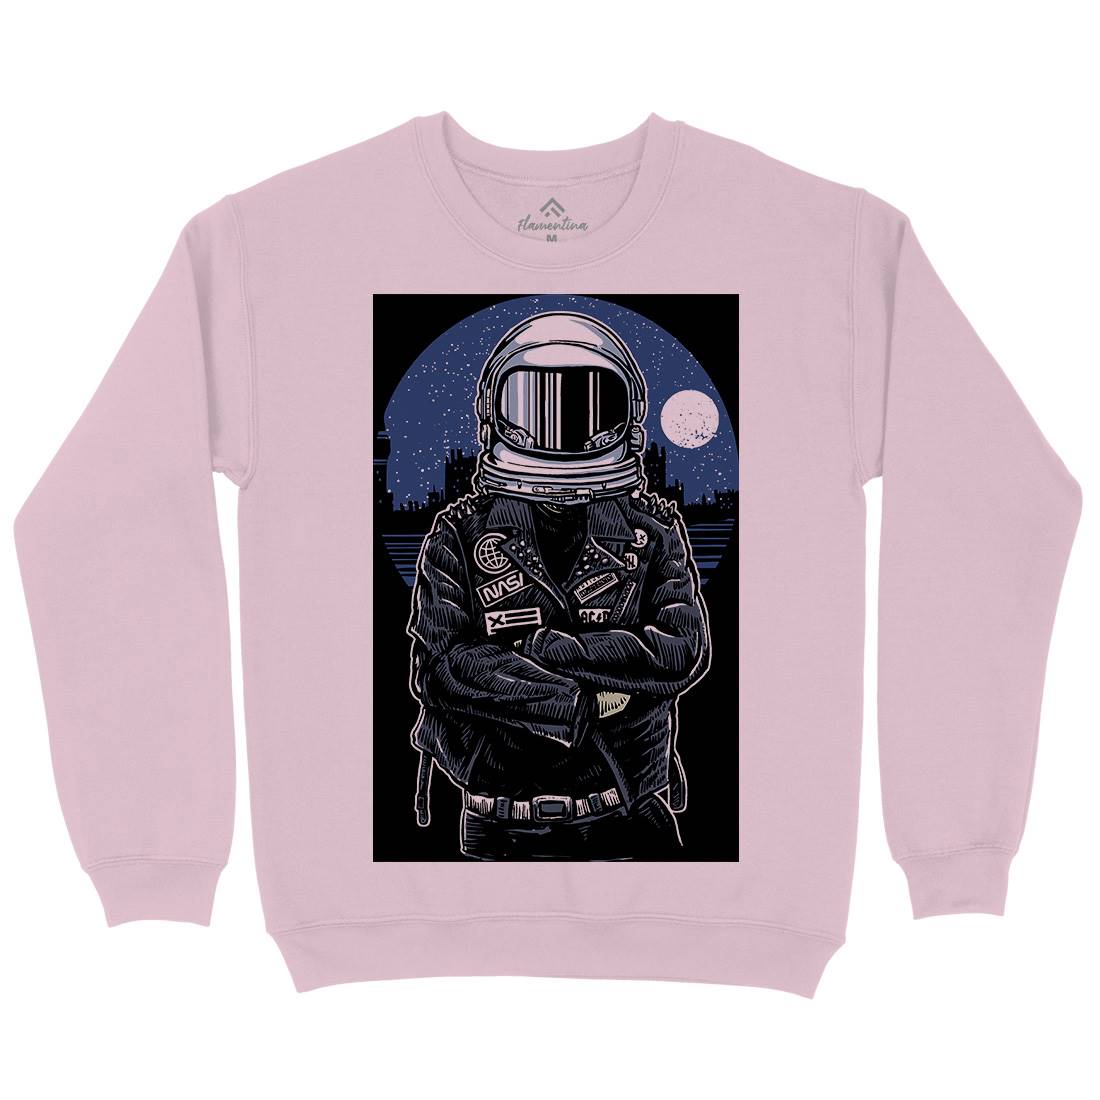 Astronaut Rebel Kids Crew Neck Sweatshirt Space A508